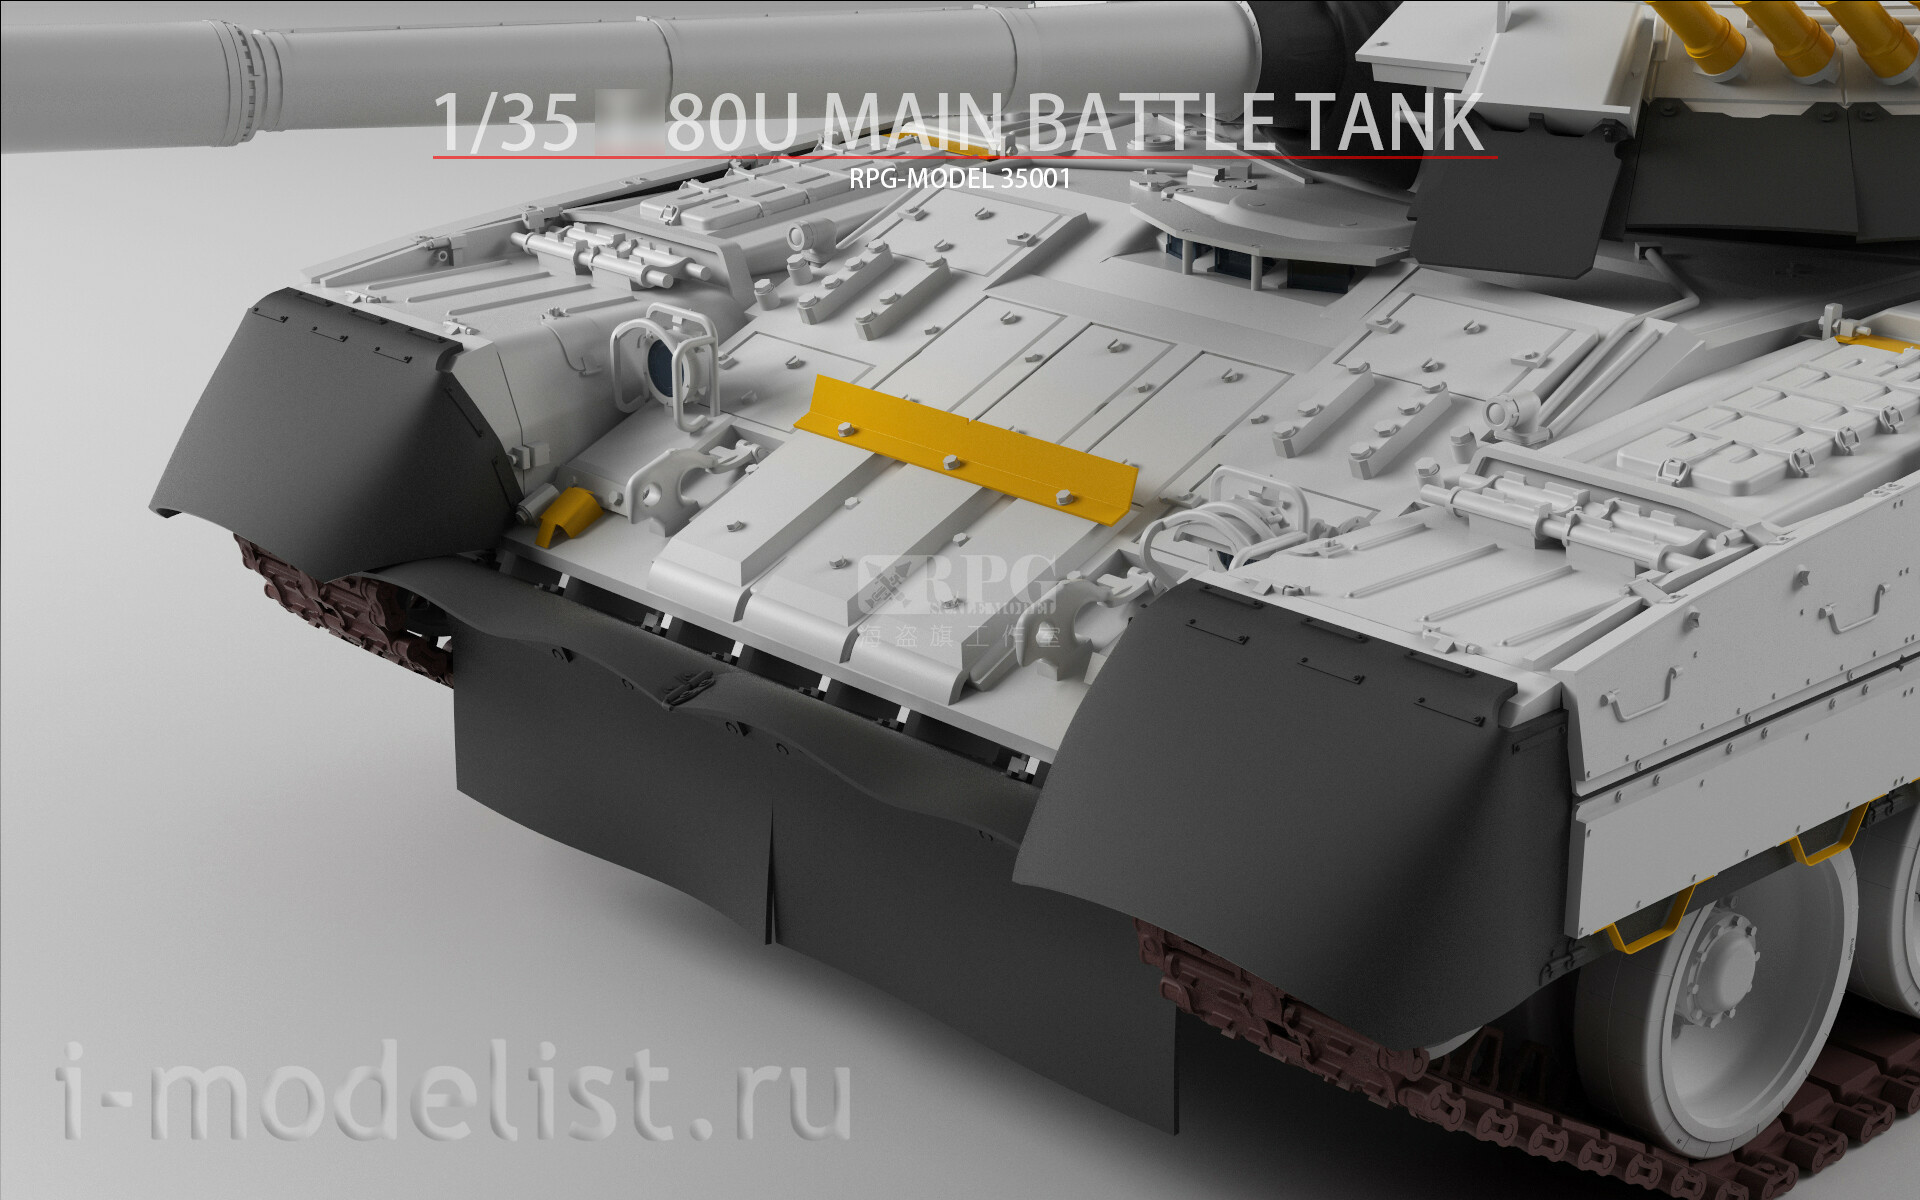 35001A RPG-MODEL 1/35 Tank type 80U + Soldier figures